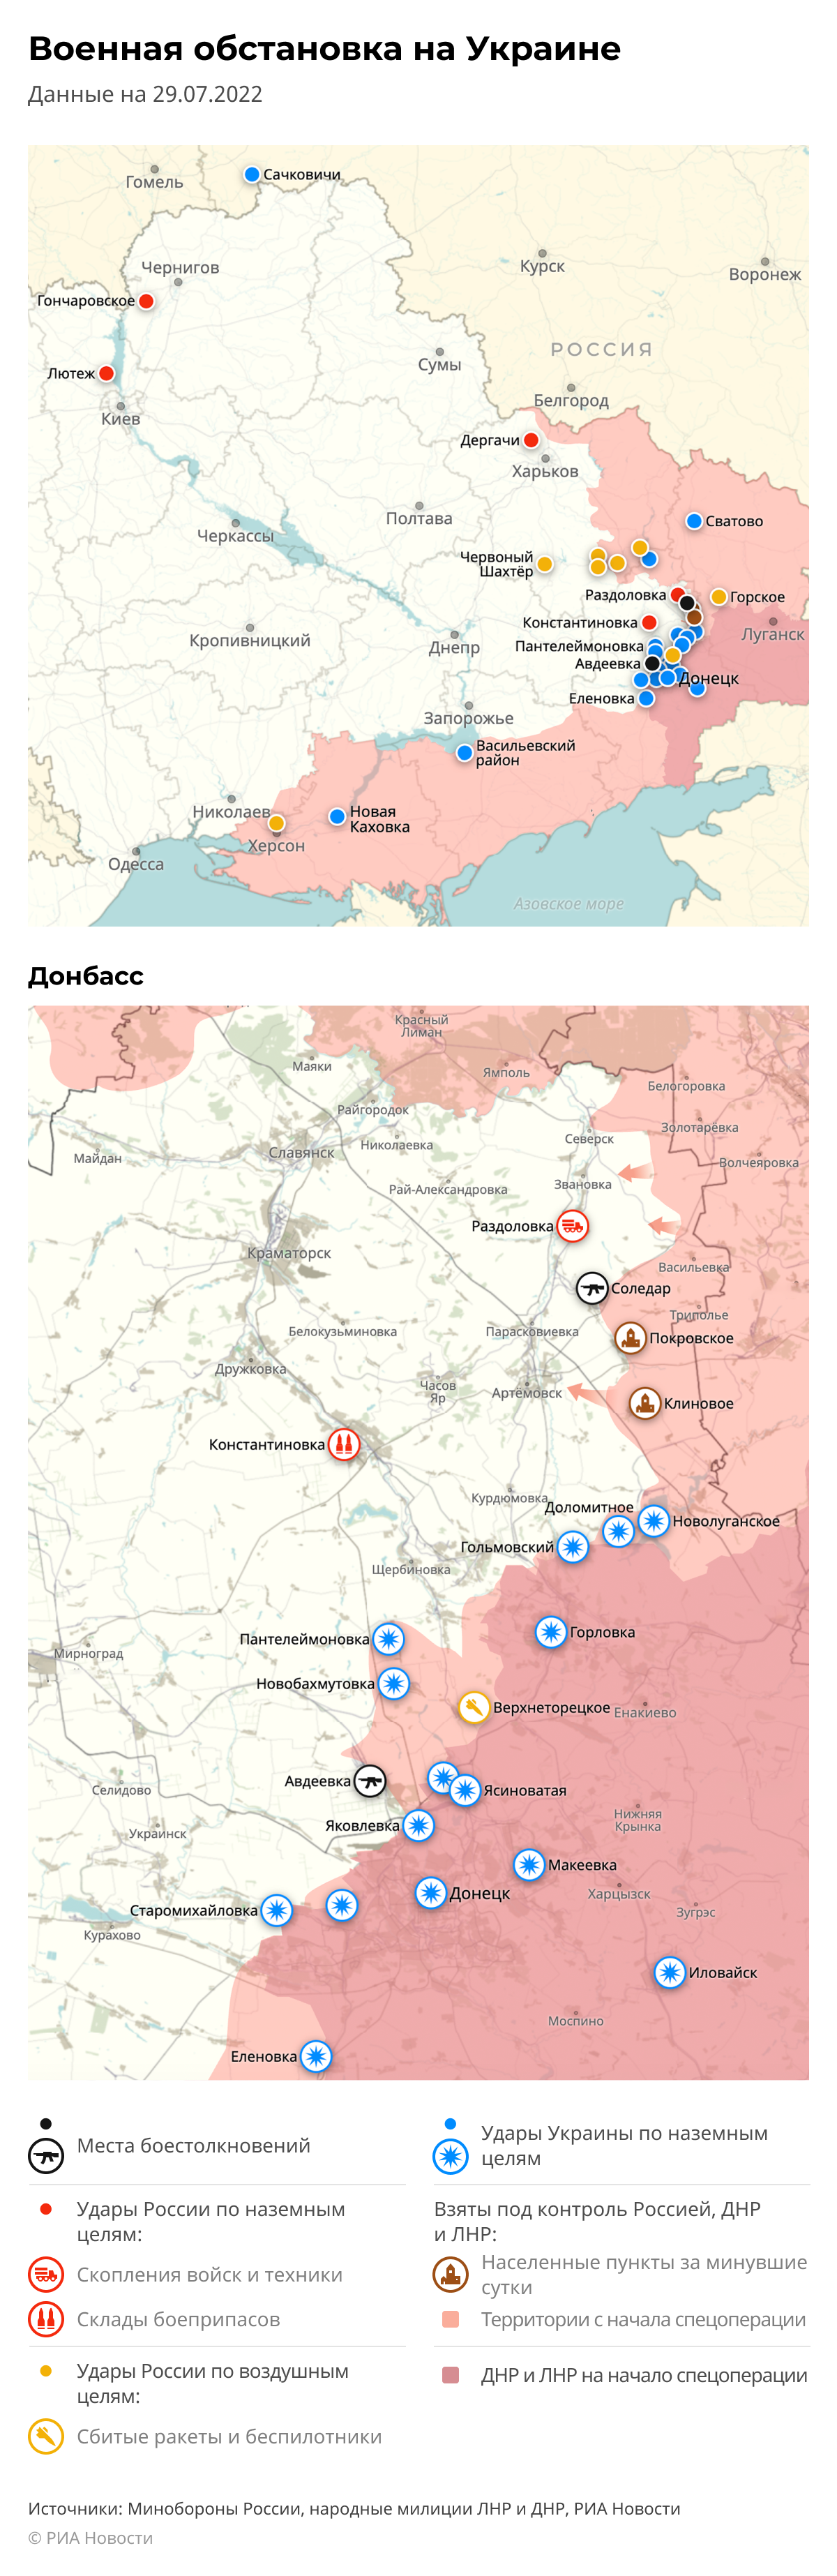 Карта спецоперации Вооруженных сил России на Украине на 29.07.2022